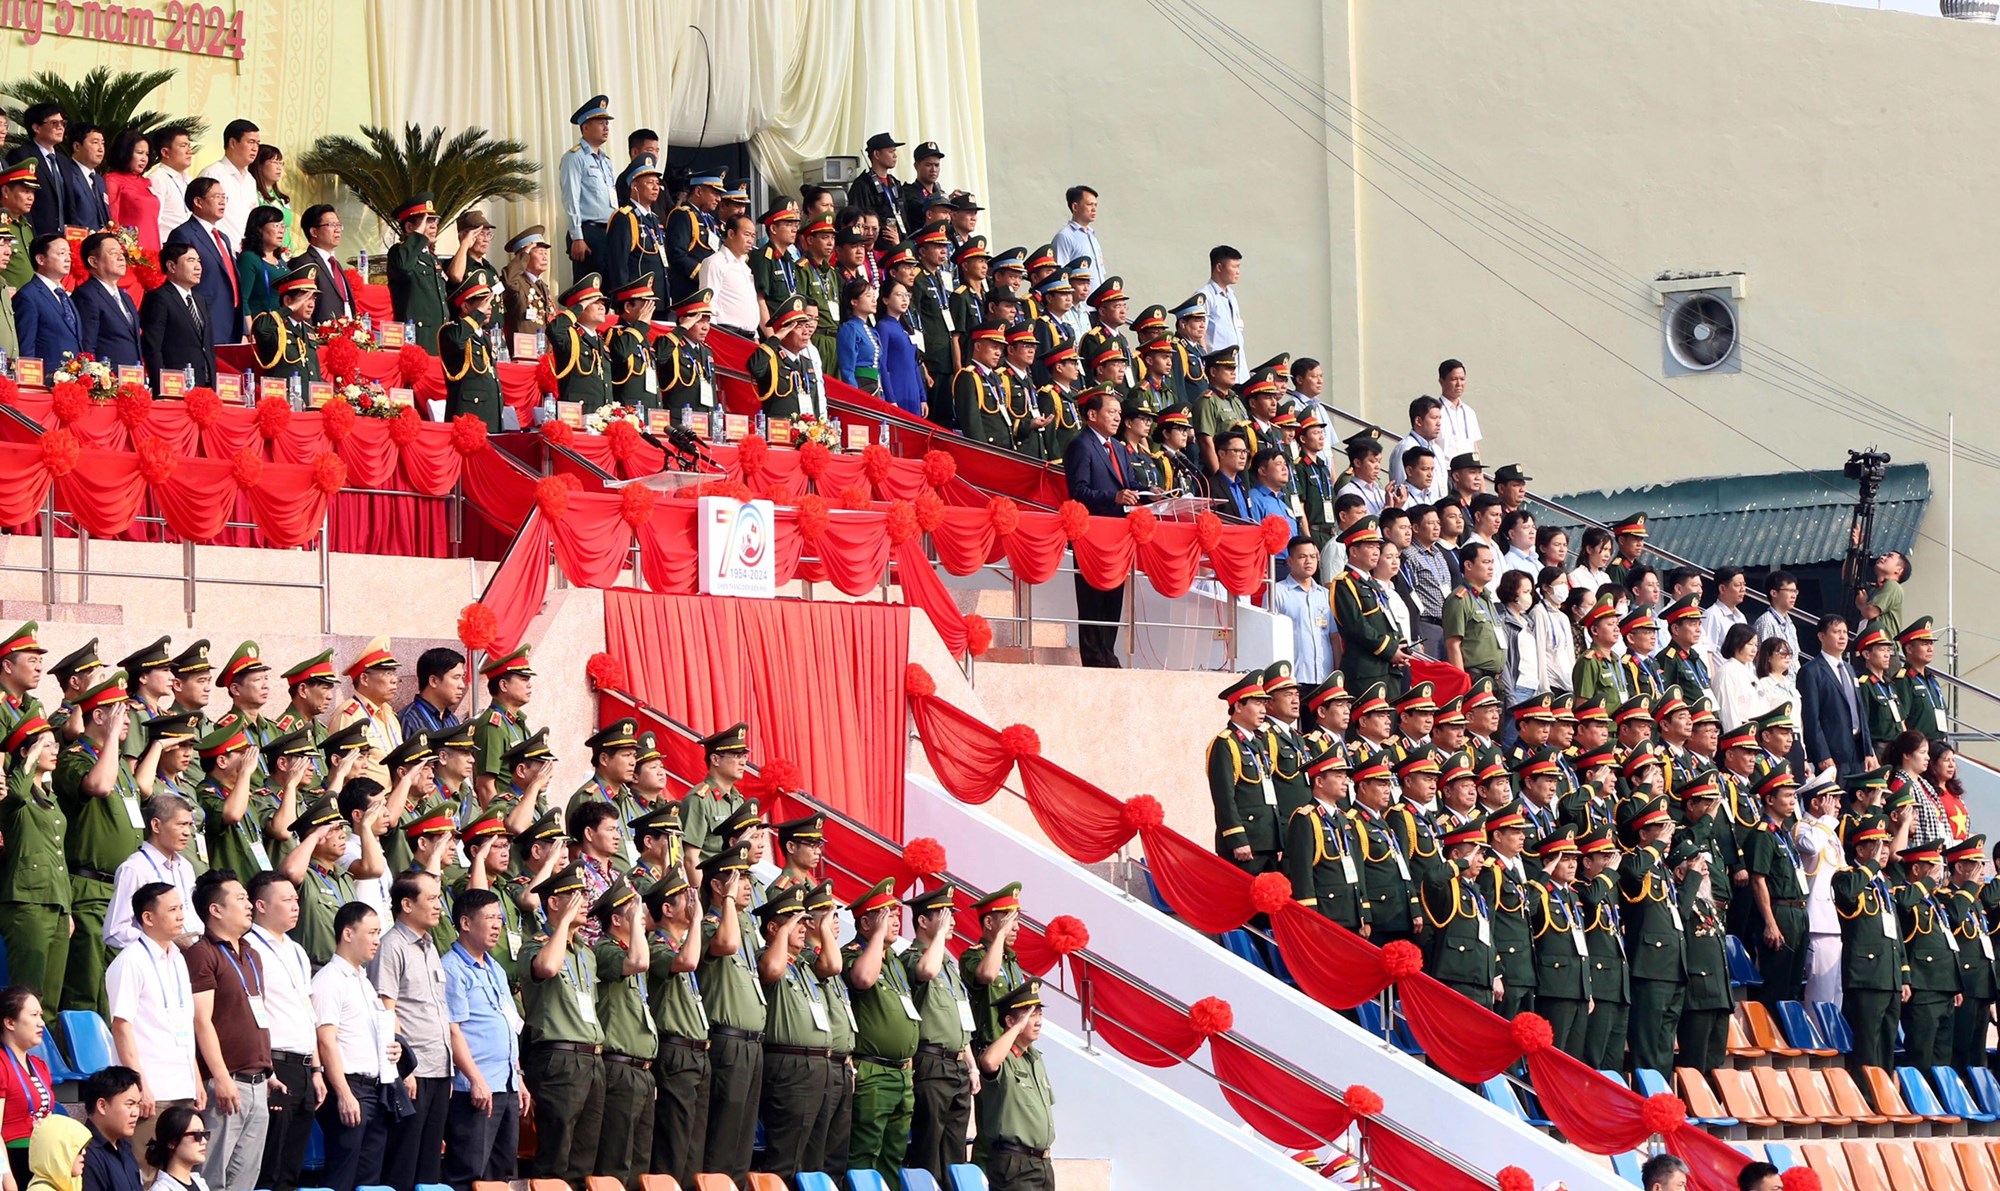 Tổng duyệt diễu binh, diễu hành kỷ niệm 70 năm Chiến thắng Điện Biên Phủ - ảnh 4